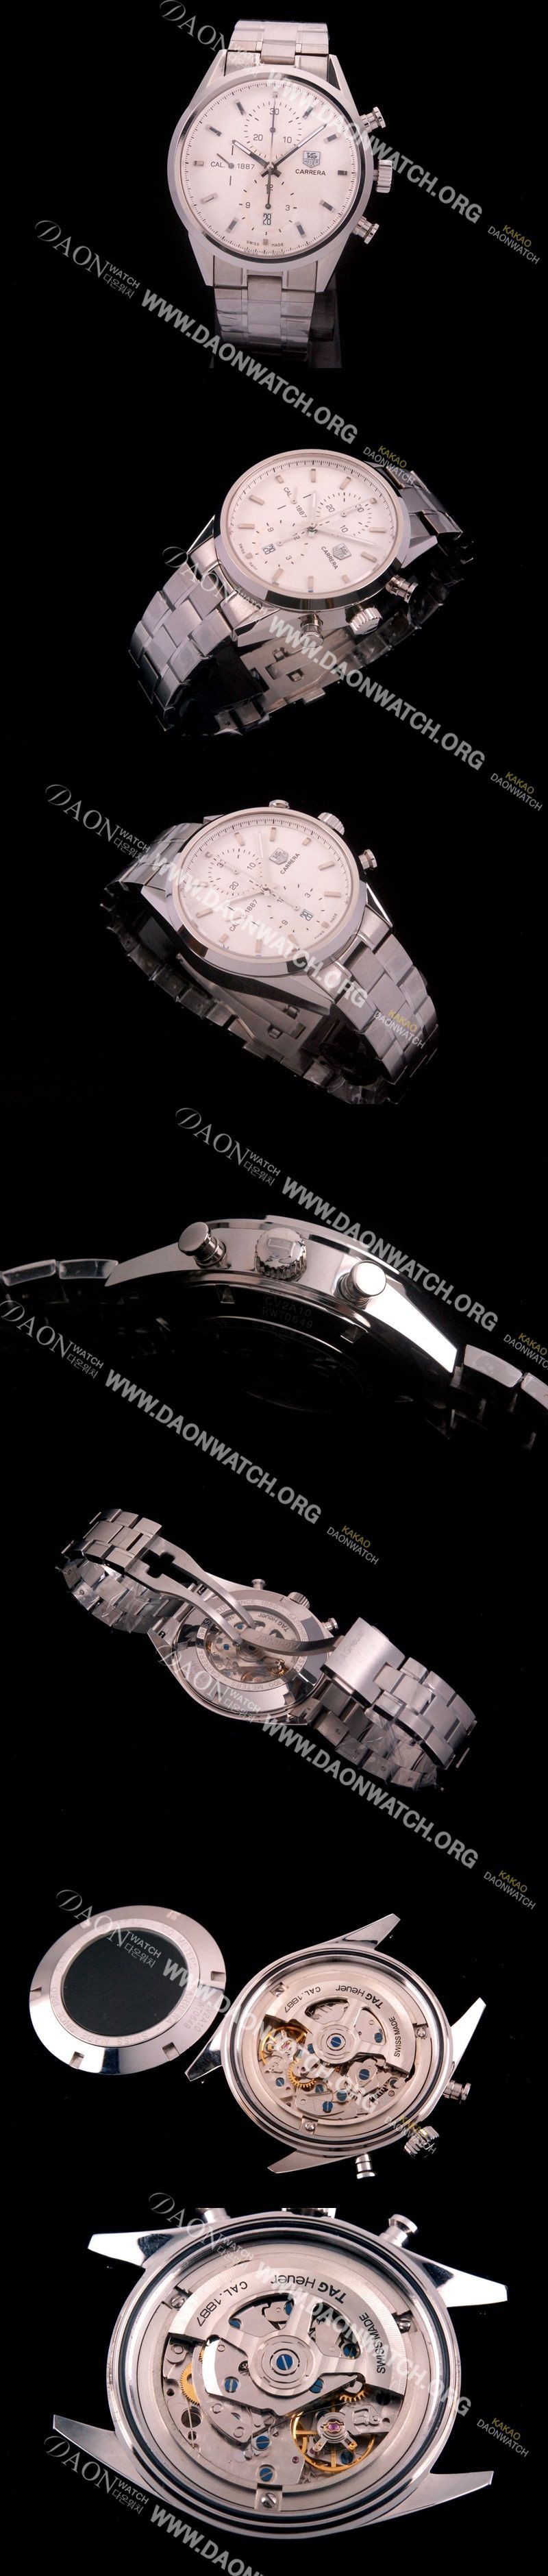 미러급 태그호이어 남성용 까레라 칼리버 1887 크로노그래프 화이트 다이얼 7750 오토매틱 TAG4201 Ⅳ